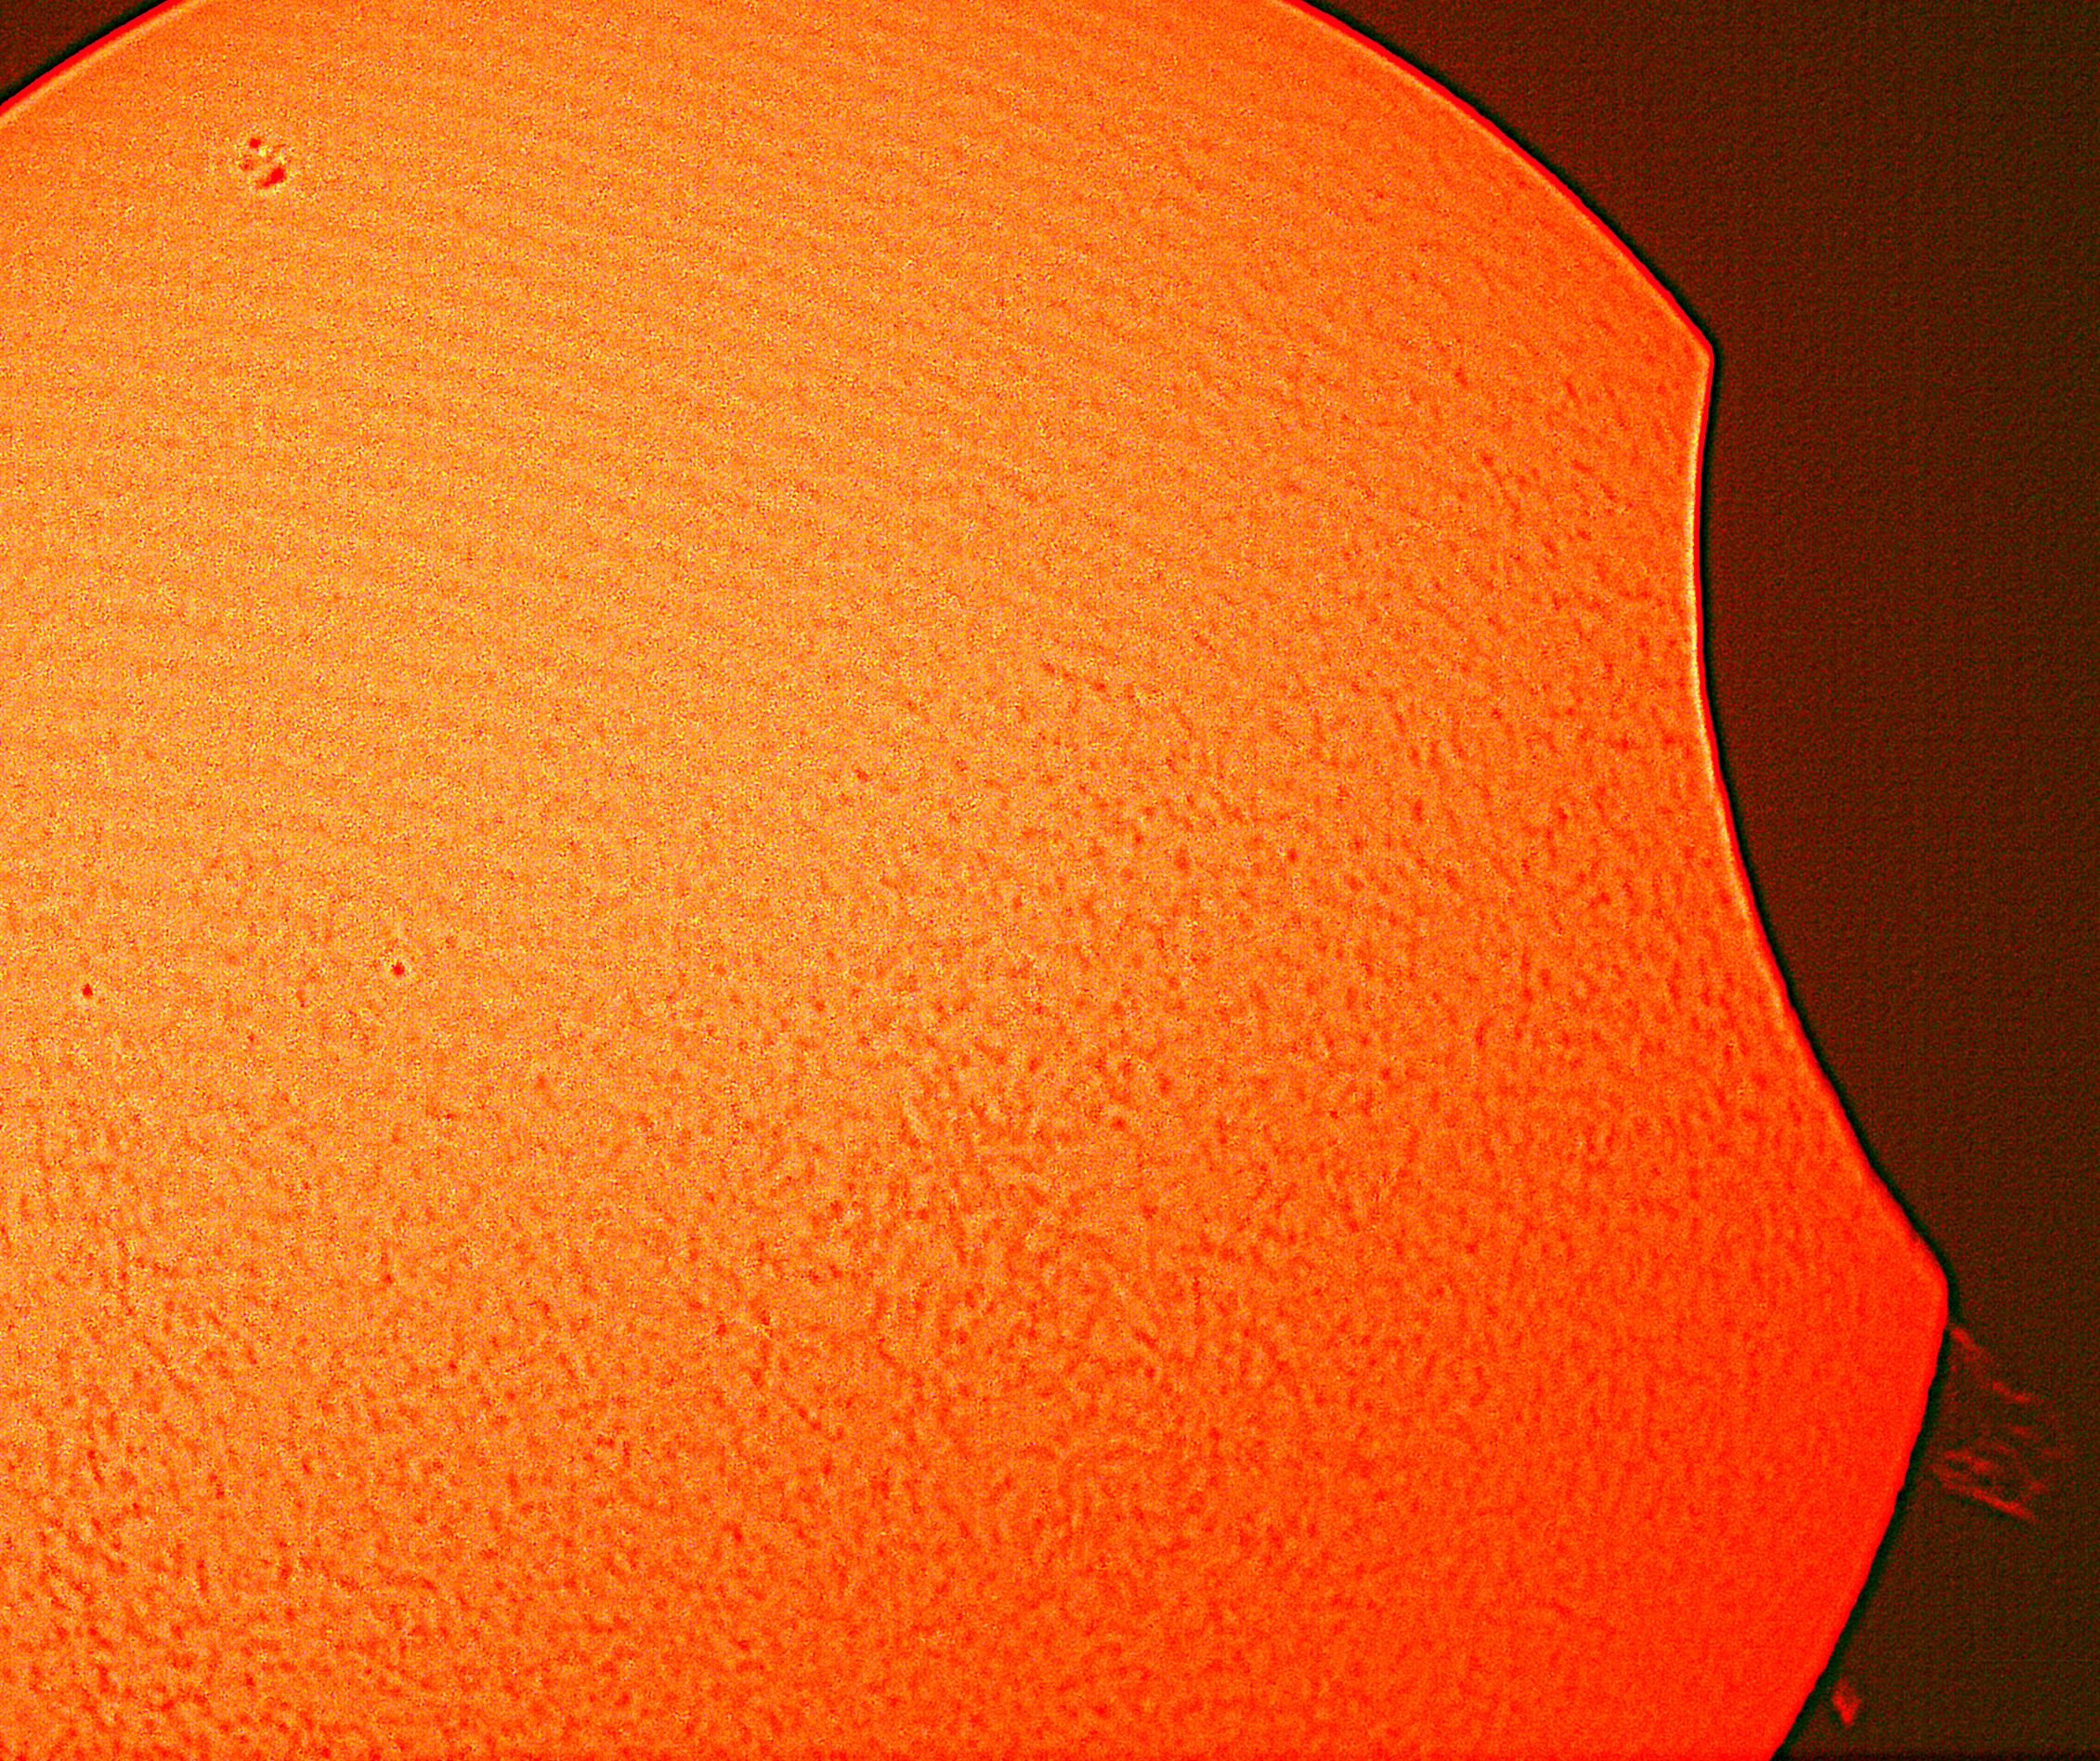 Eclipsi parcial de Sol 25-10-22, Jordi Arnella/Andreu Palomares